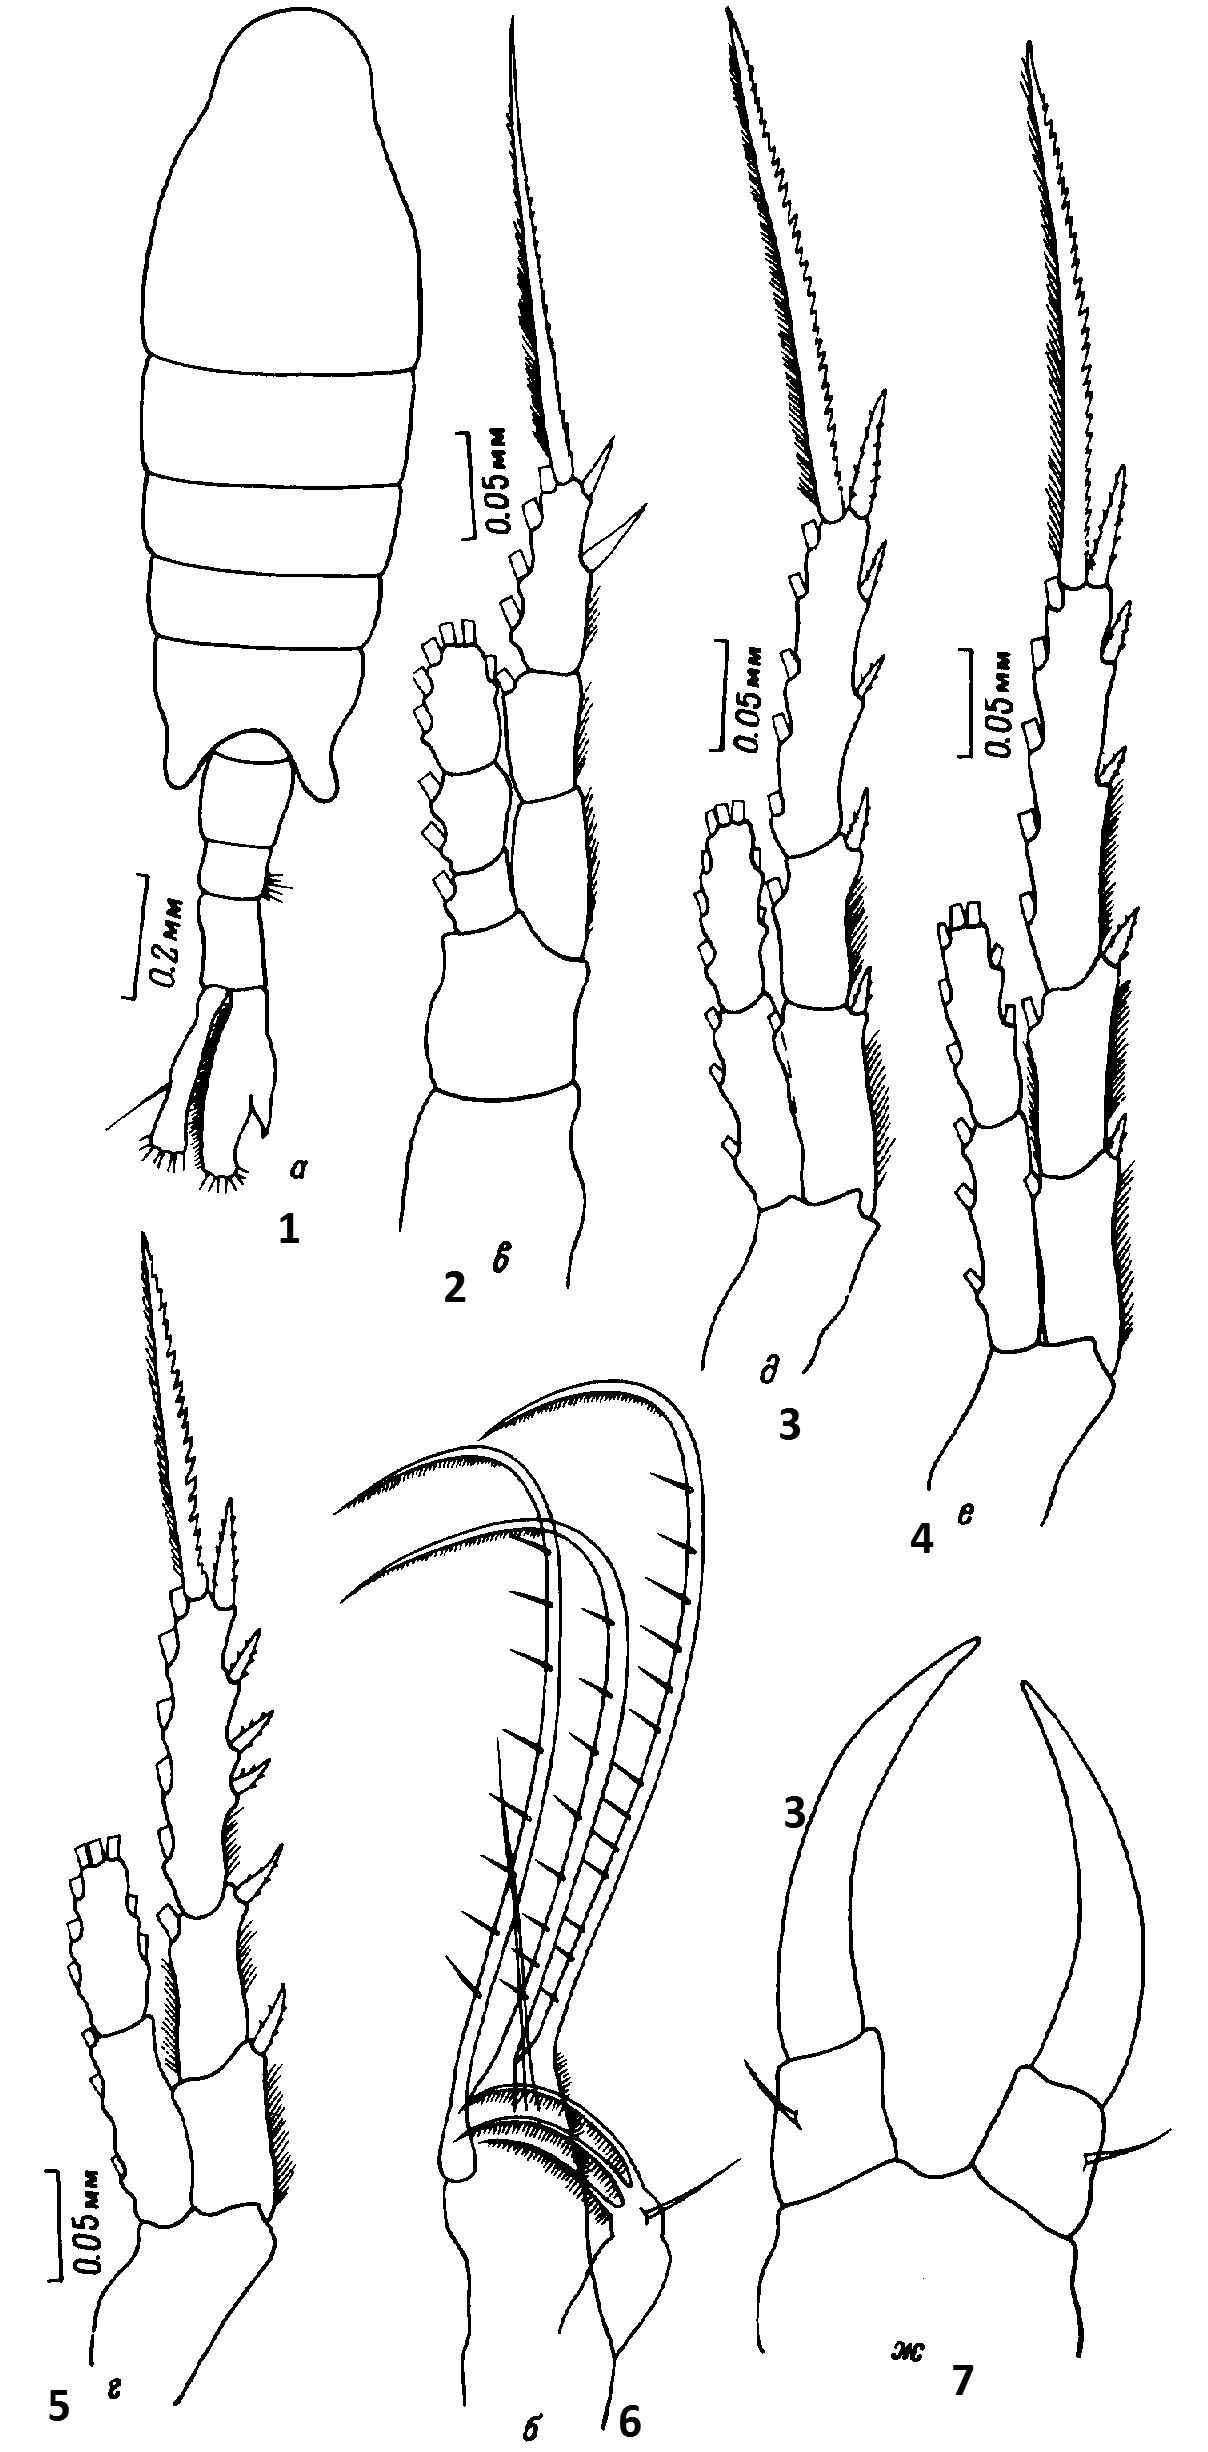 Species Tortanus (Boreotortanus) discaudatus - Plate 13 of morphological figures